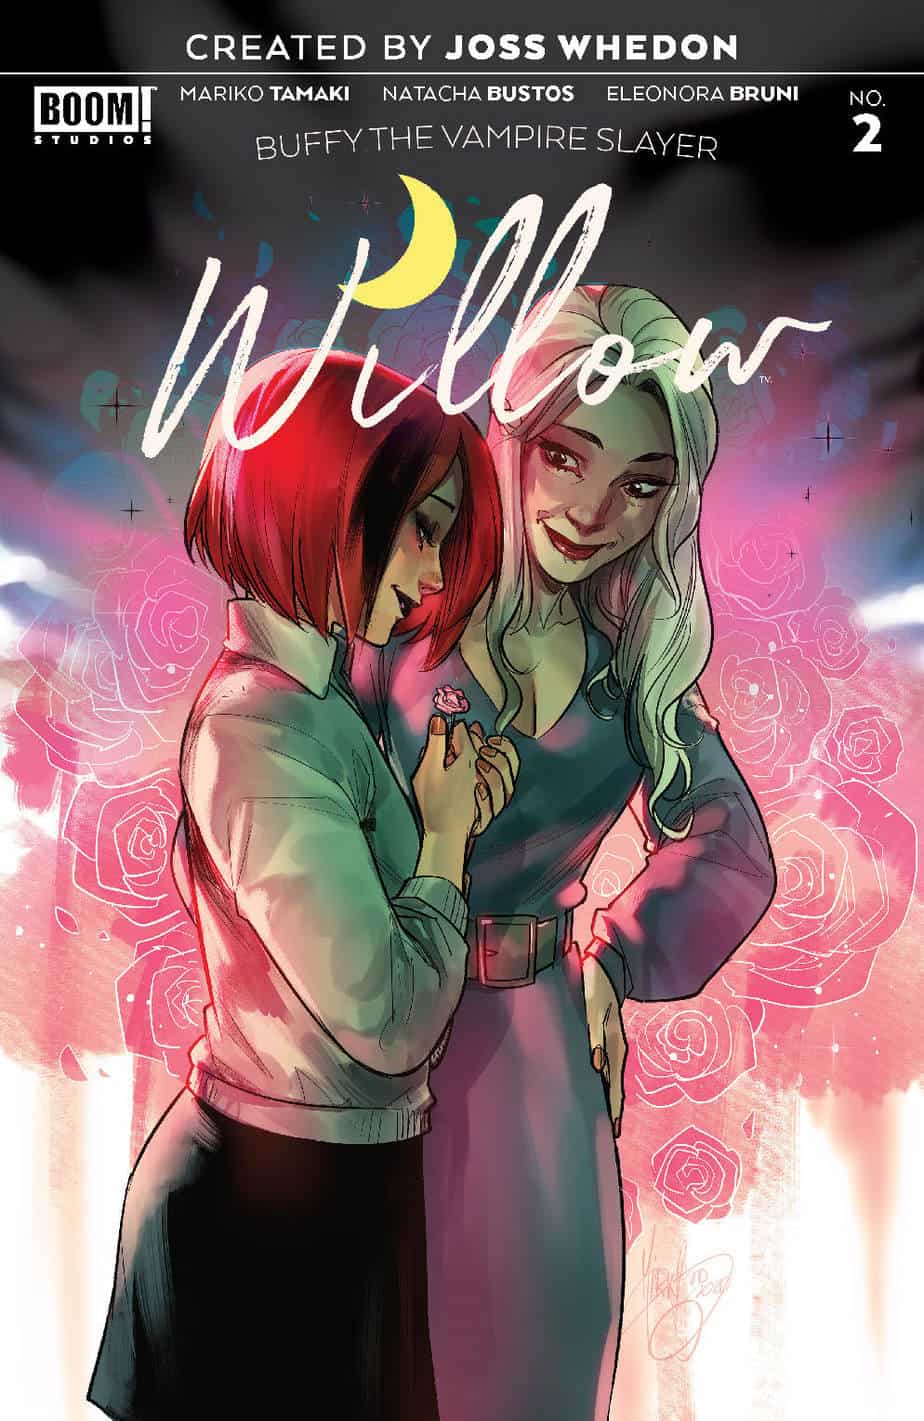 Buffy The Vampire Slayer: Willow #2 - Variant Cover by Mirka Andolfo